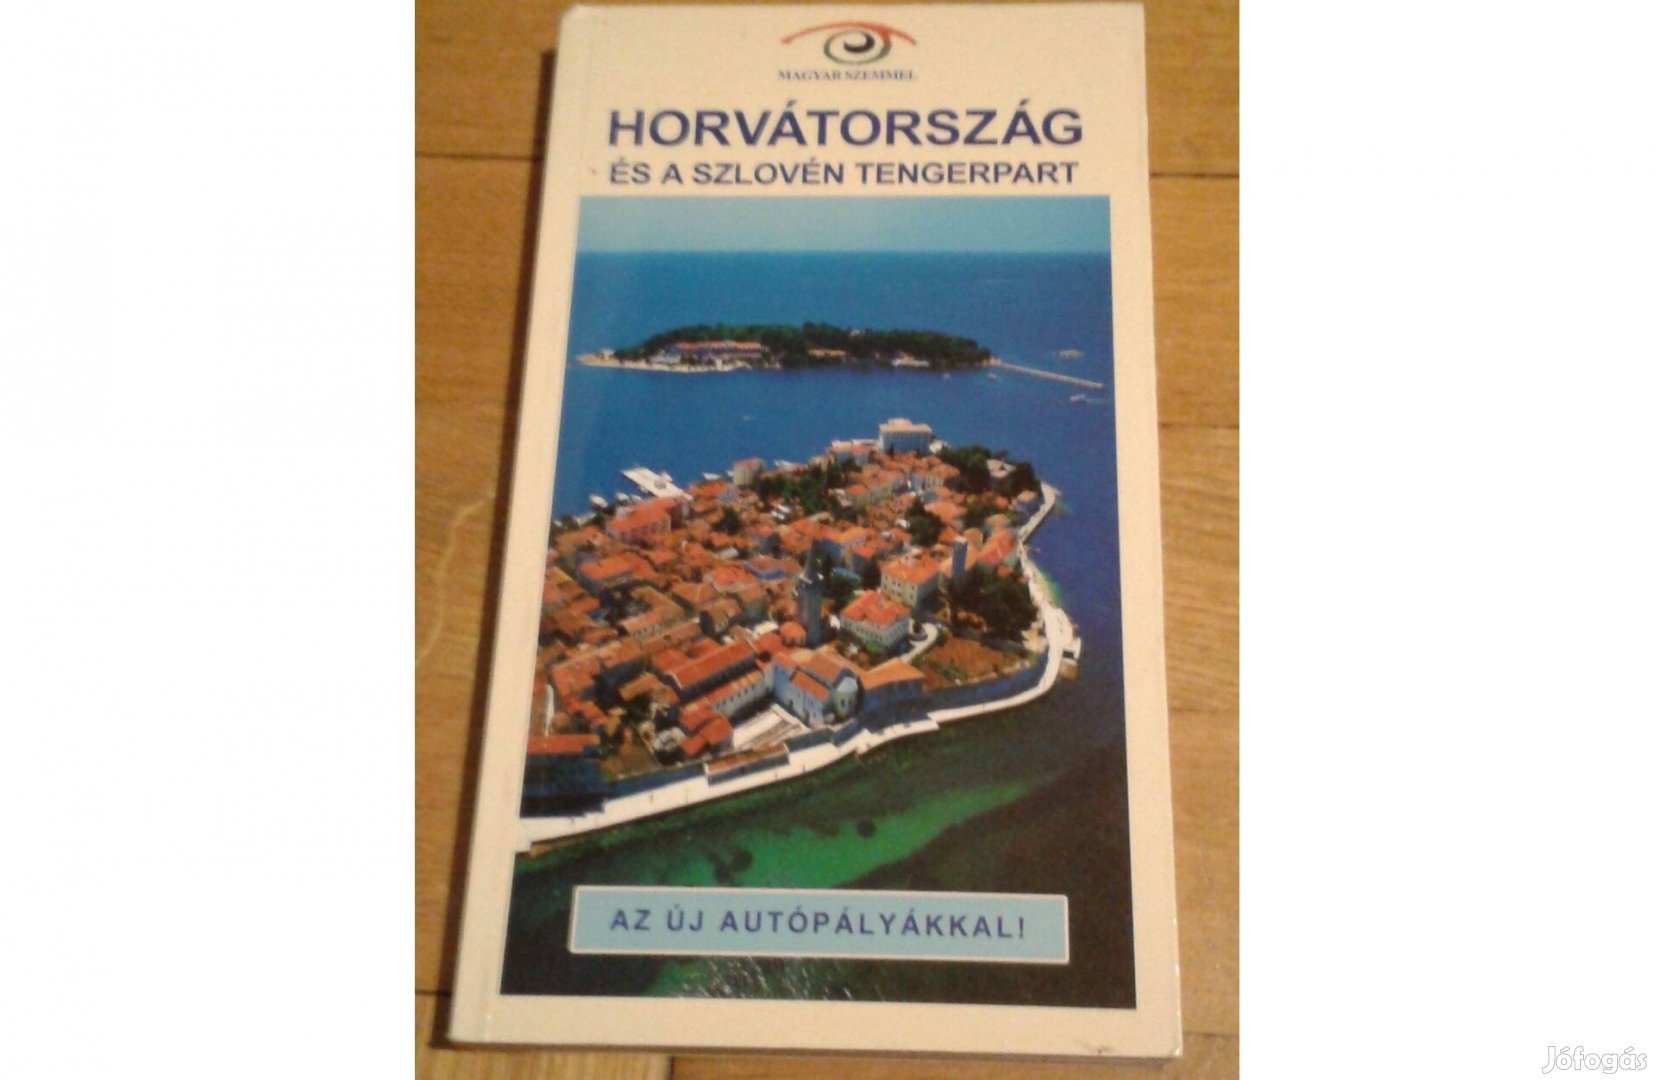 Horvátország és a szlovén tengerpart-Magyar szemmel